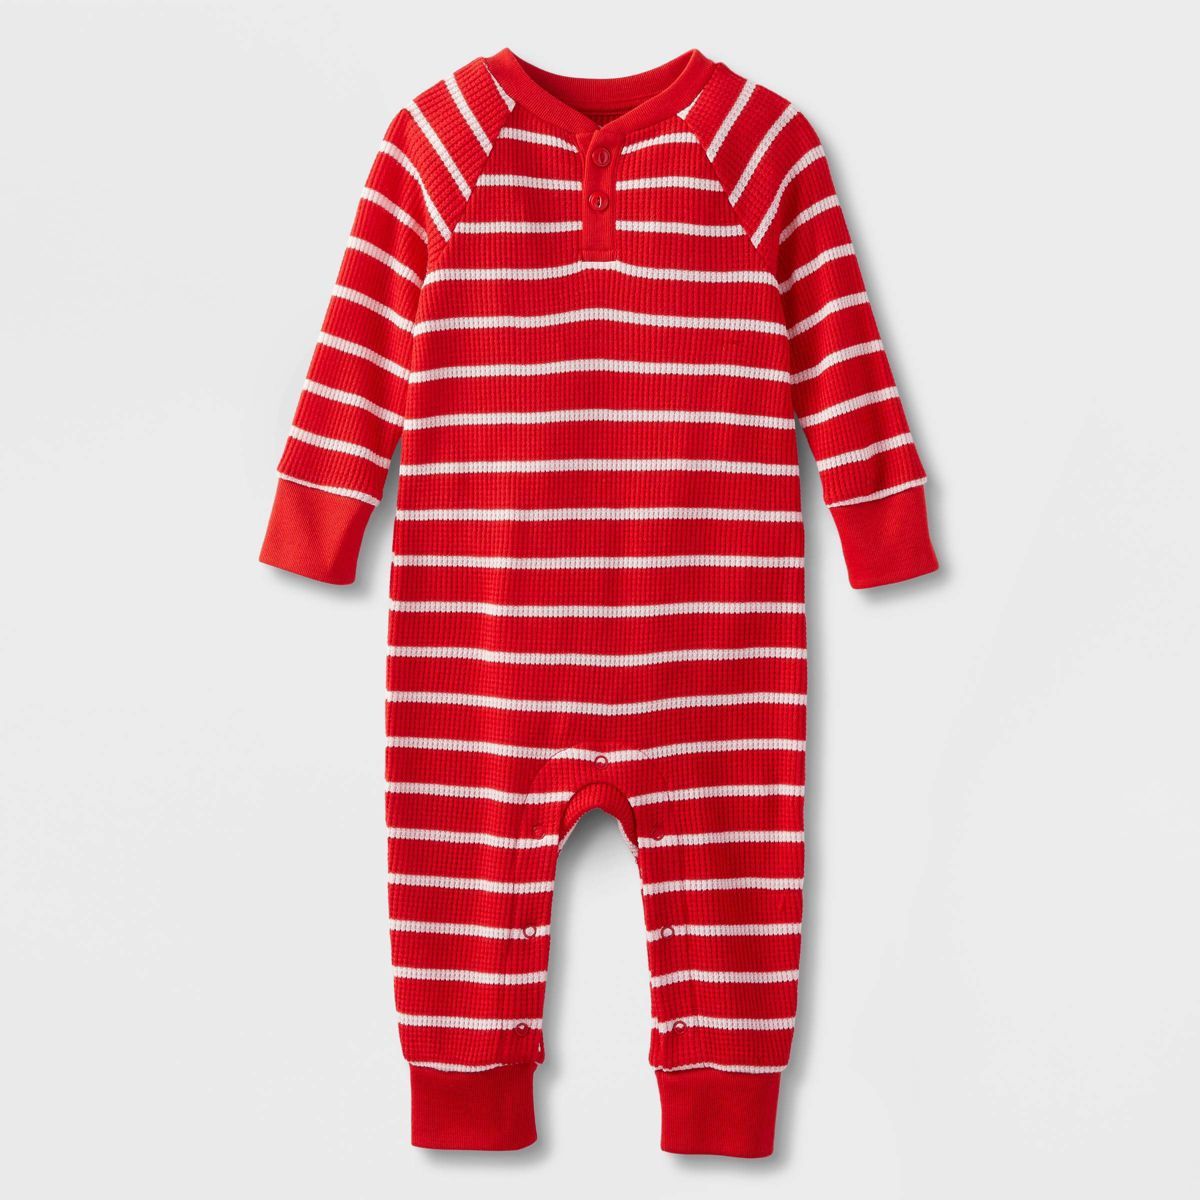 Baby Striped Matching Family Romper Set - Wondershop™ Red | Target